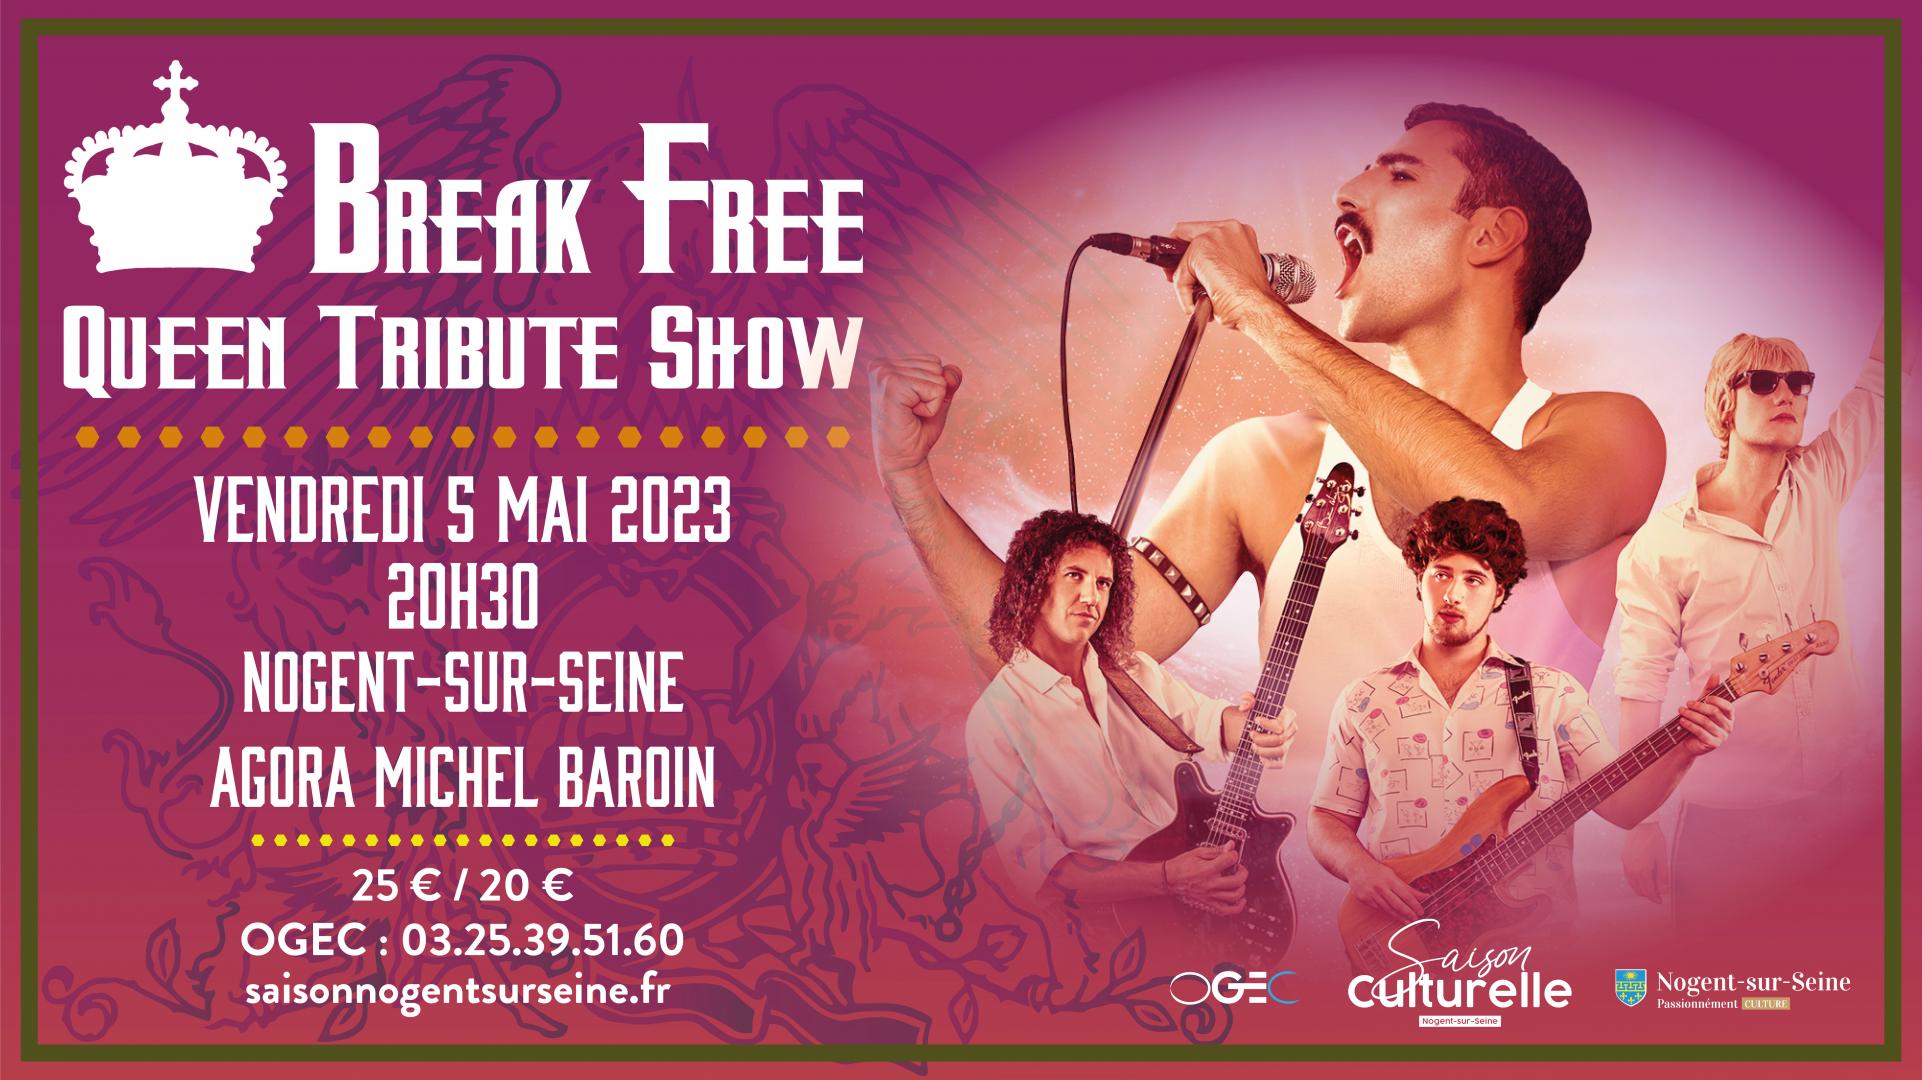 Break Free - Queen tribute show